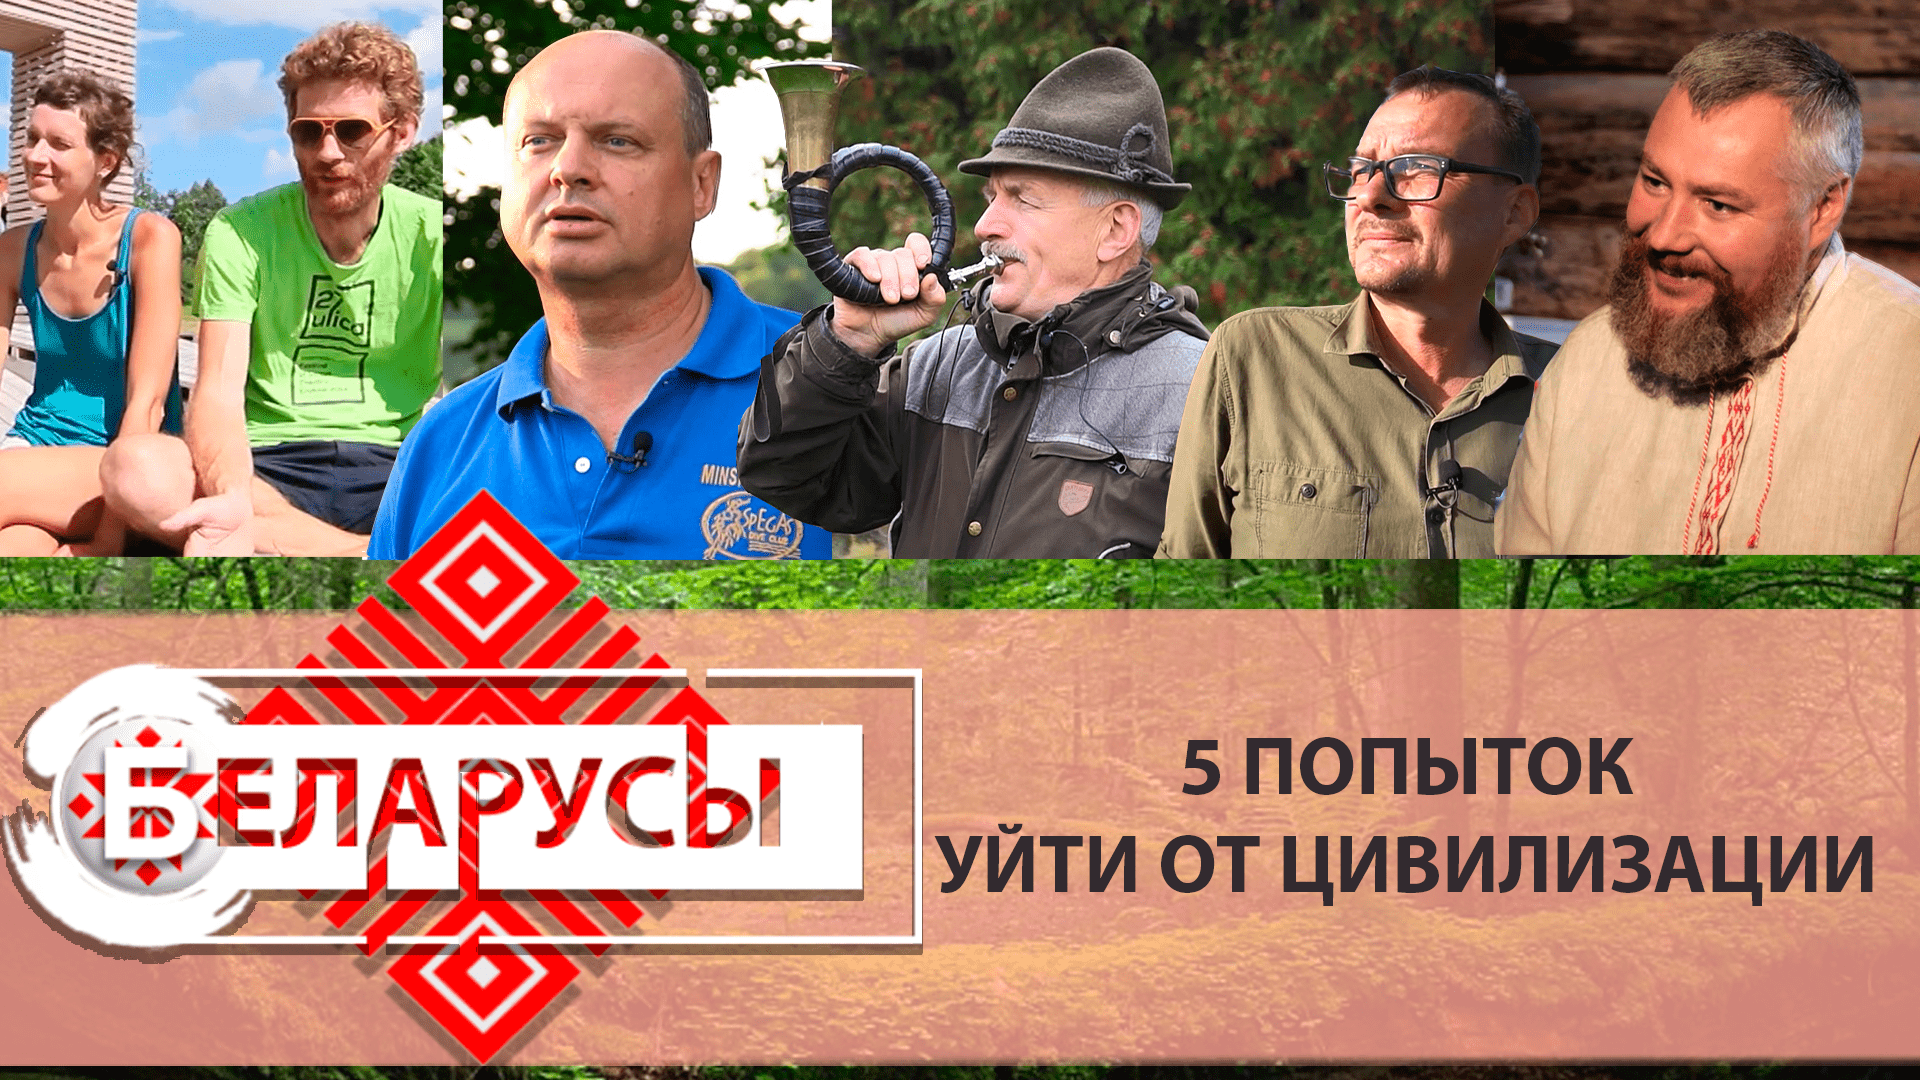 Жизнь в удивительных местах Беларуси. 5 историй побега от цивилизации